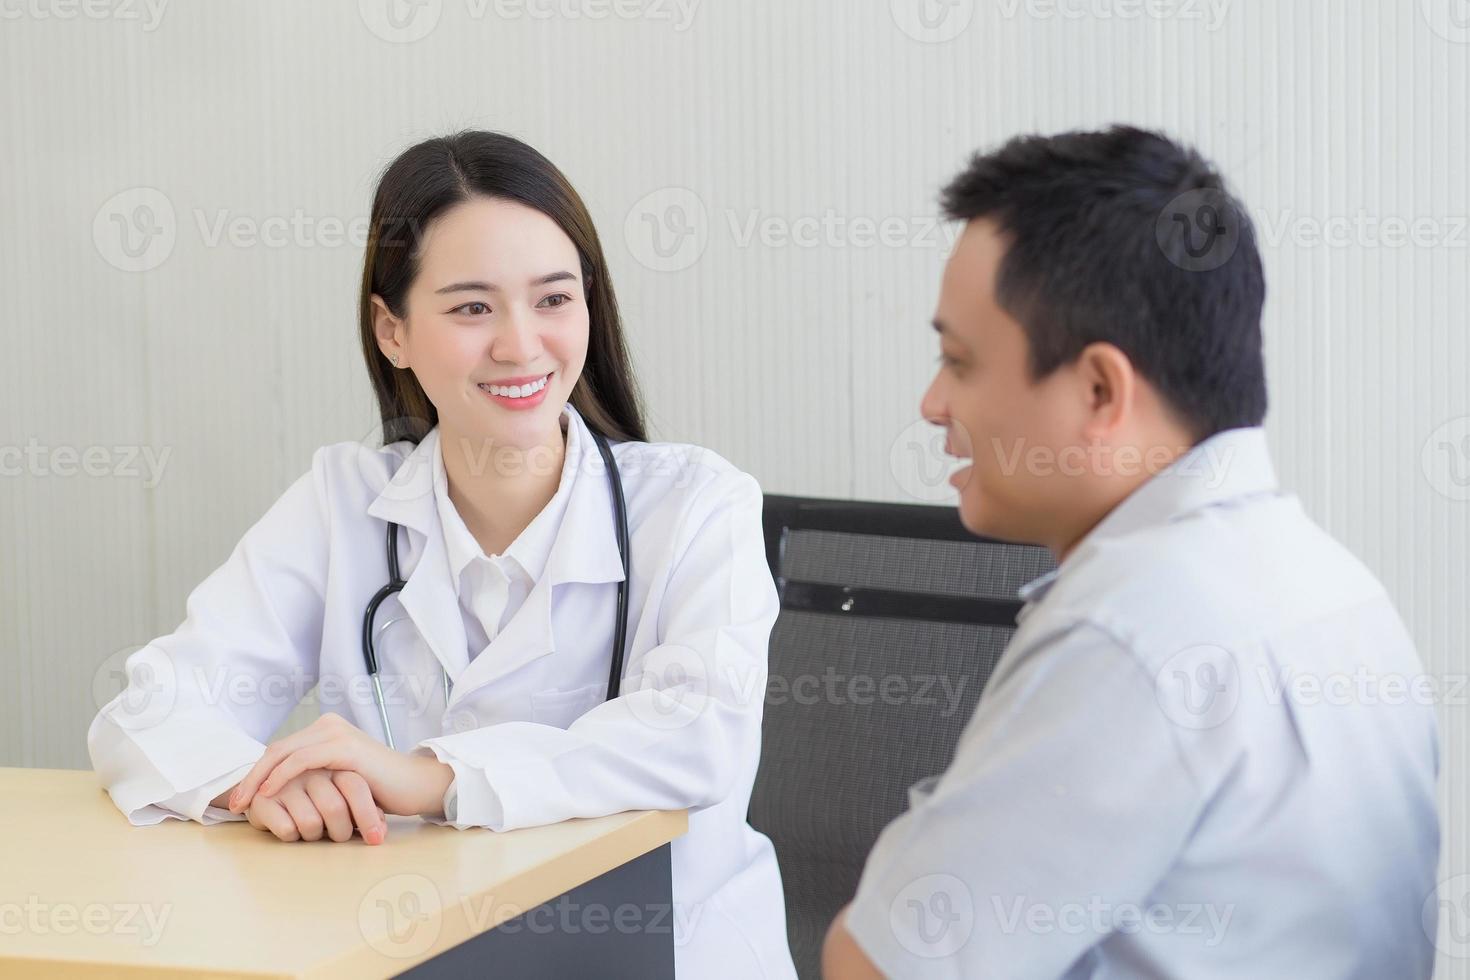 jeune femme médecin professionnelle asiatique sourire de bonne humeur suggère des solutions de santé aux patients masculins âgés dans la salle d'examen de l'hôpital. photo